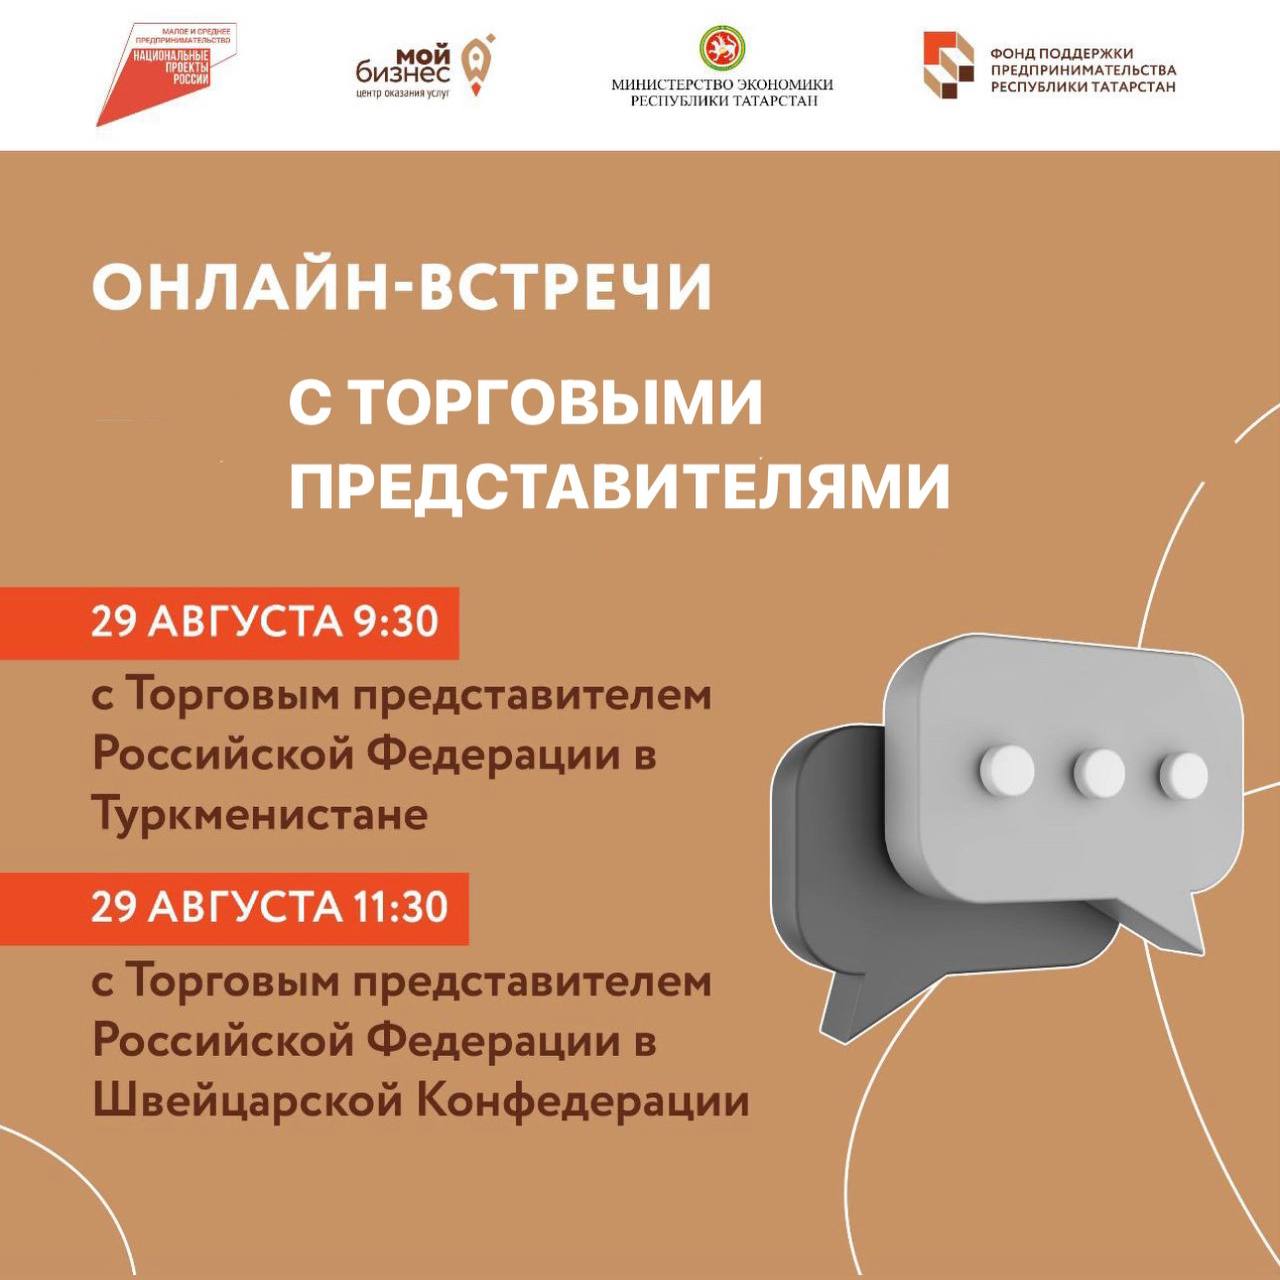 Информируем Вас о том, что Министерство промышленности и торговли Республики Татарстан сегодня 29 августа проведет 2 онлайн-встречи: